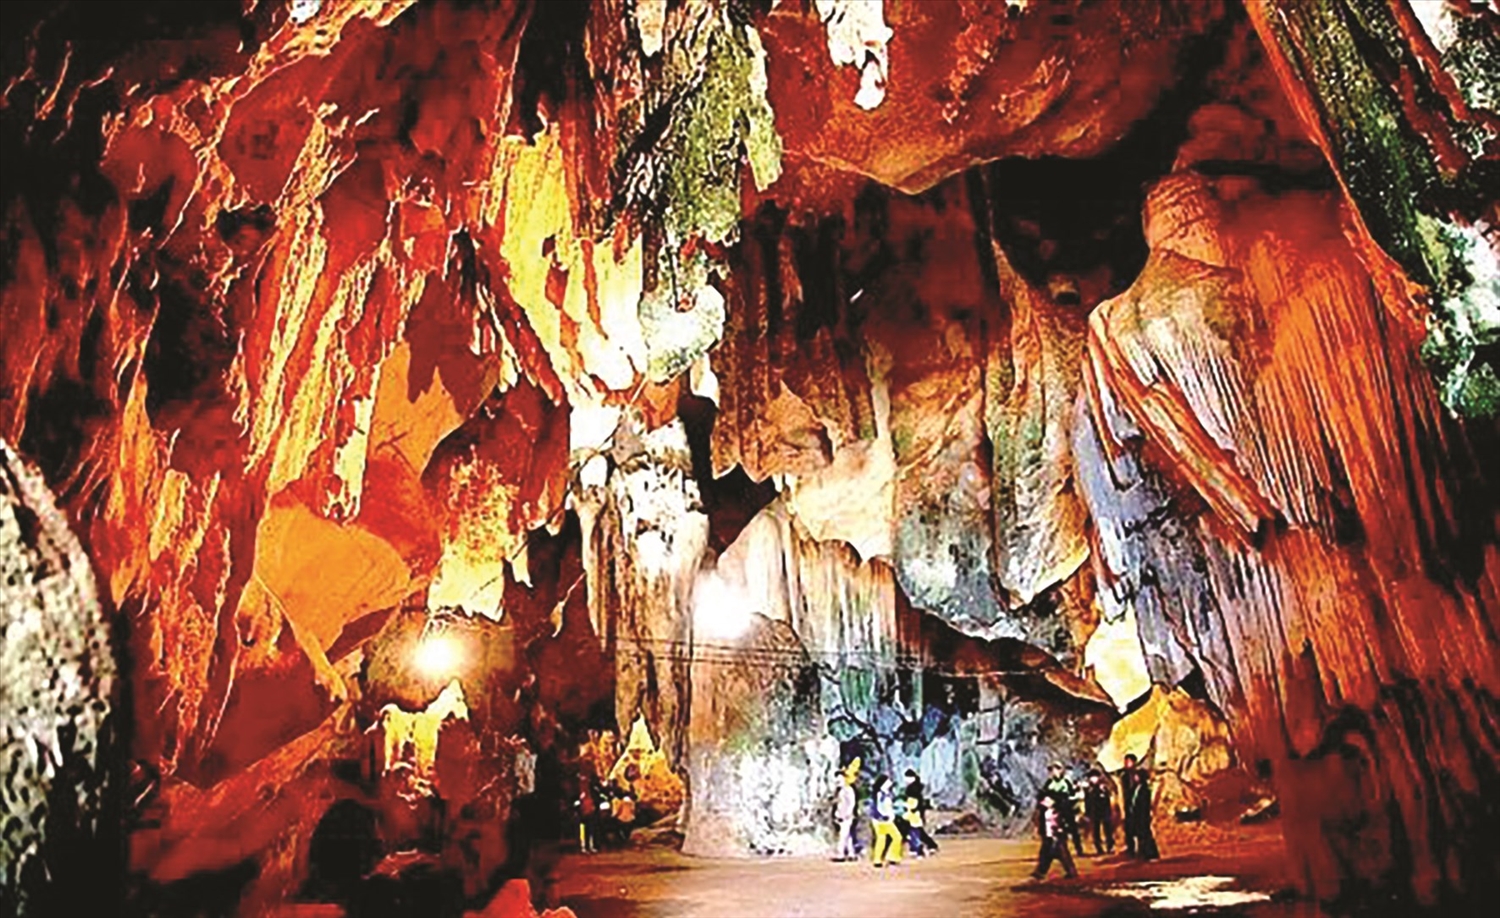 Vẻ đẹp hoang sơ của hang Bua (Thẳm Bua) ở Nghệ An